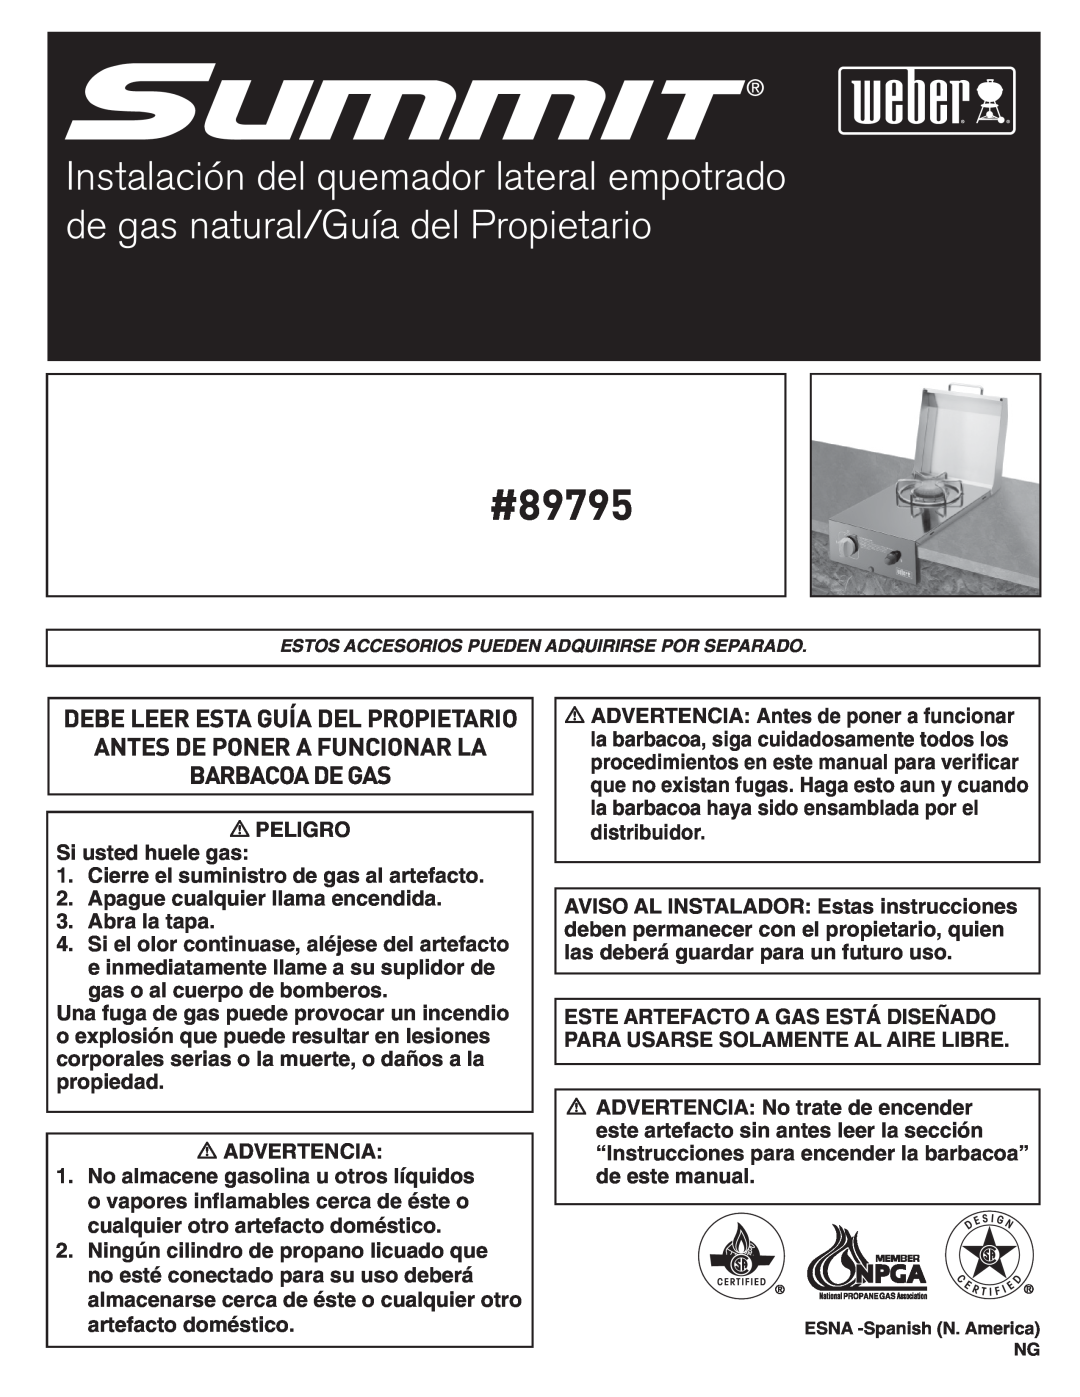 Summit manual #89795, Antes De Poner A Funcionar La Barbacoadegas, Debe Leer Esta Guía Del Propietario 